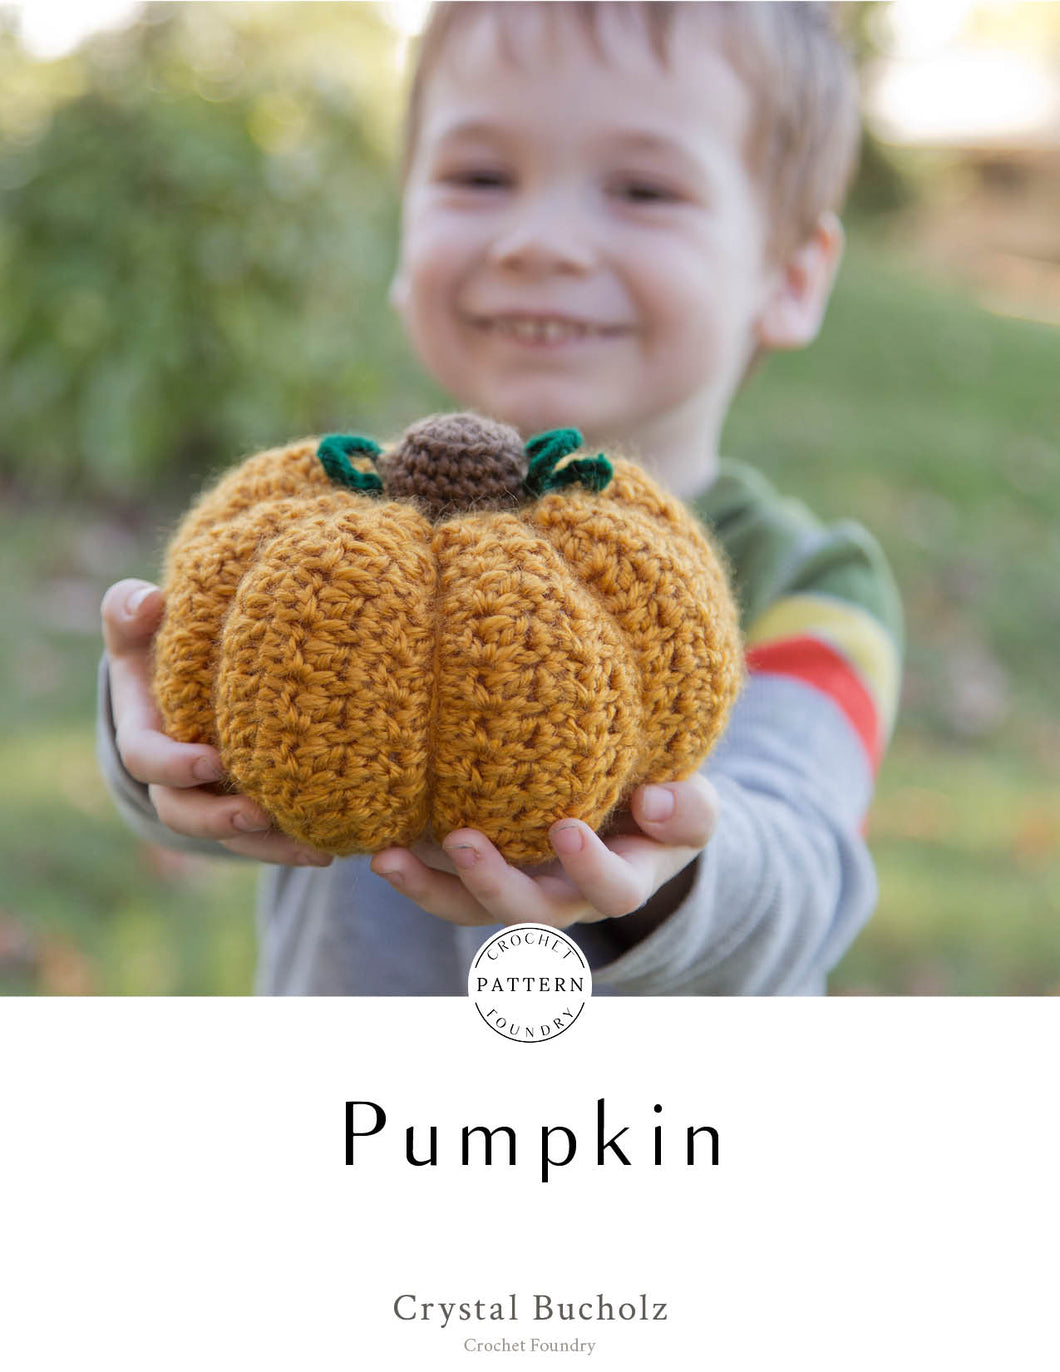 Pumpkin Crochet PDF Pattern by Crystal Bucholz